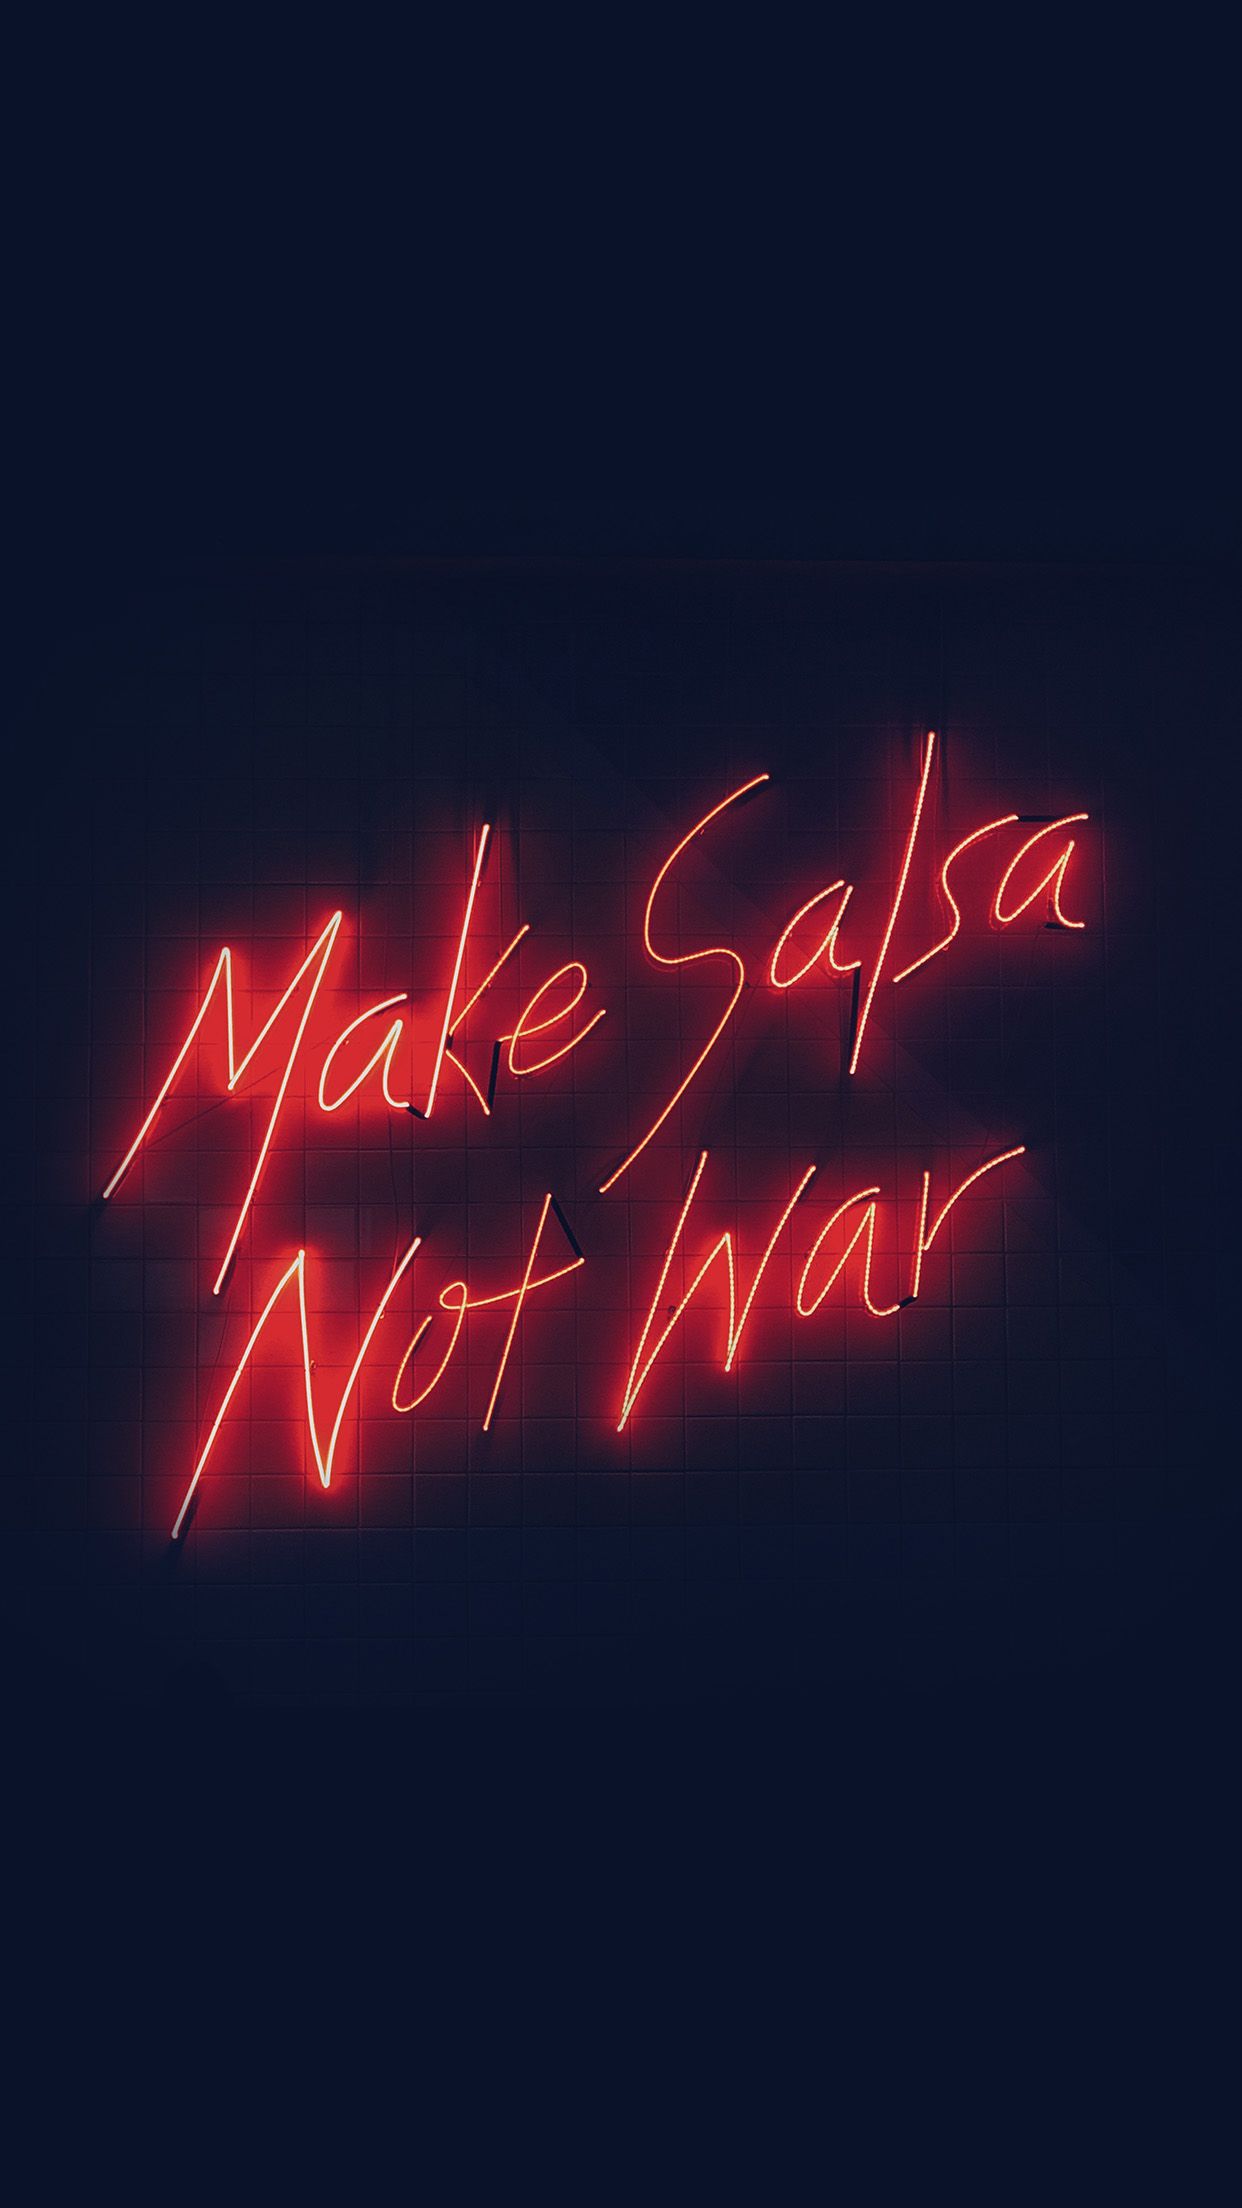 Make Salsa Not War iPhone HD Wallpaper In